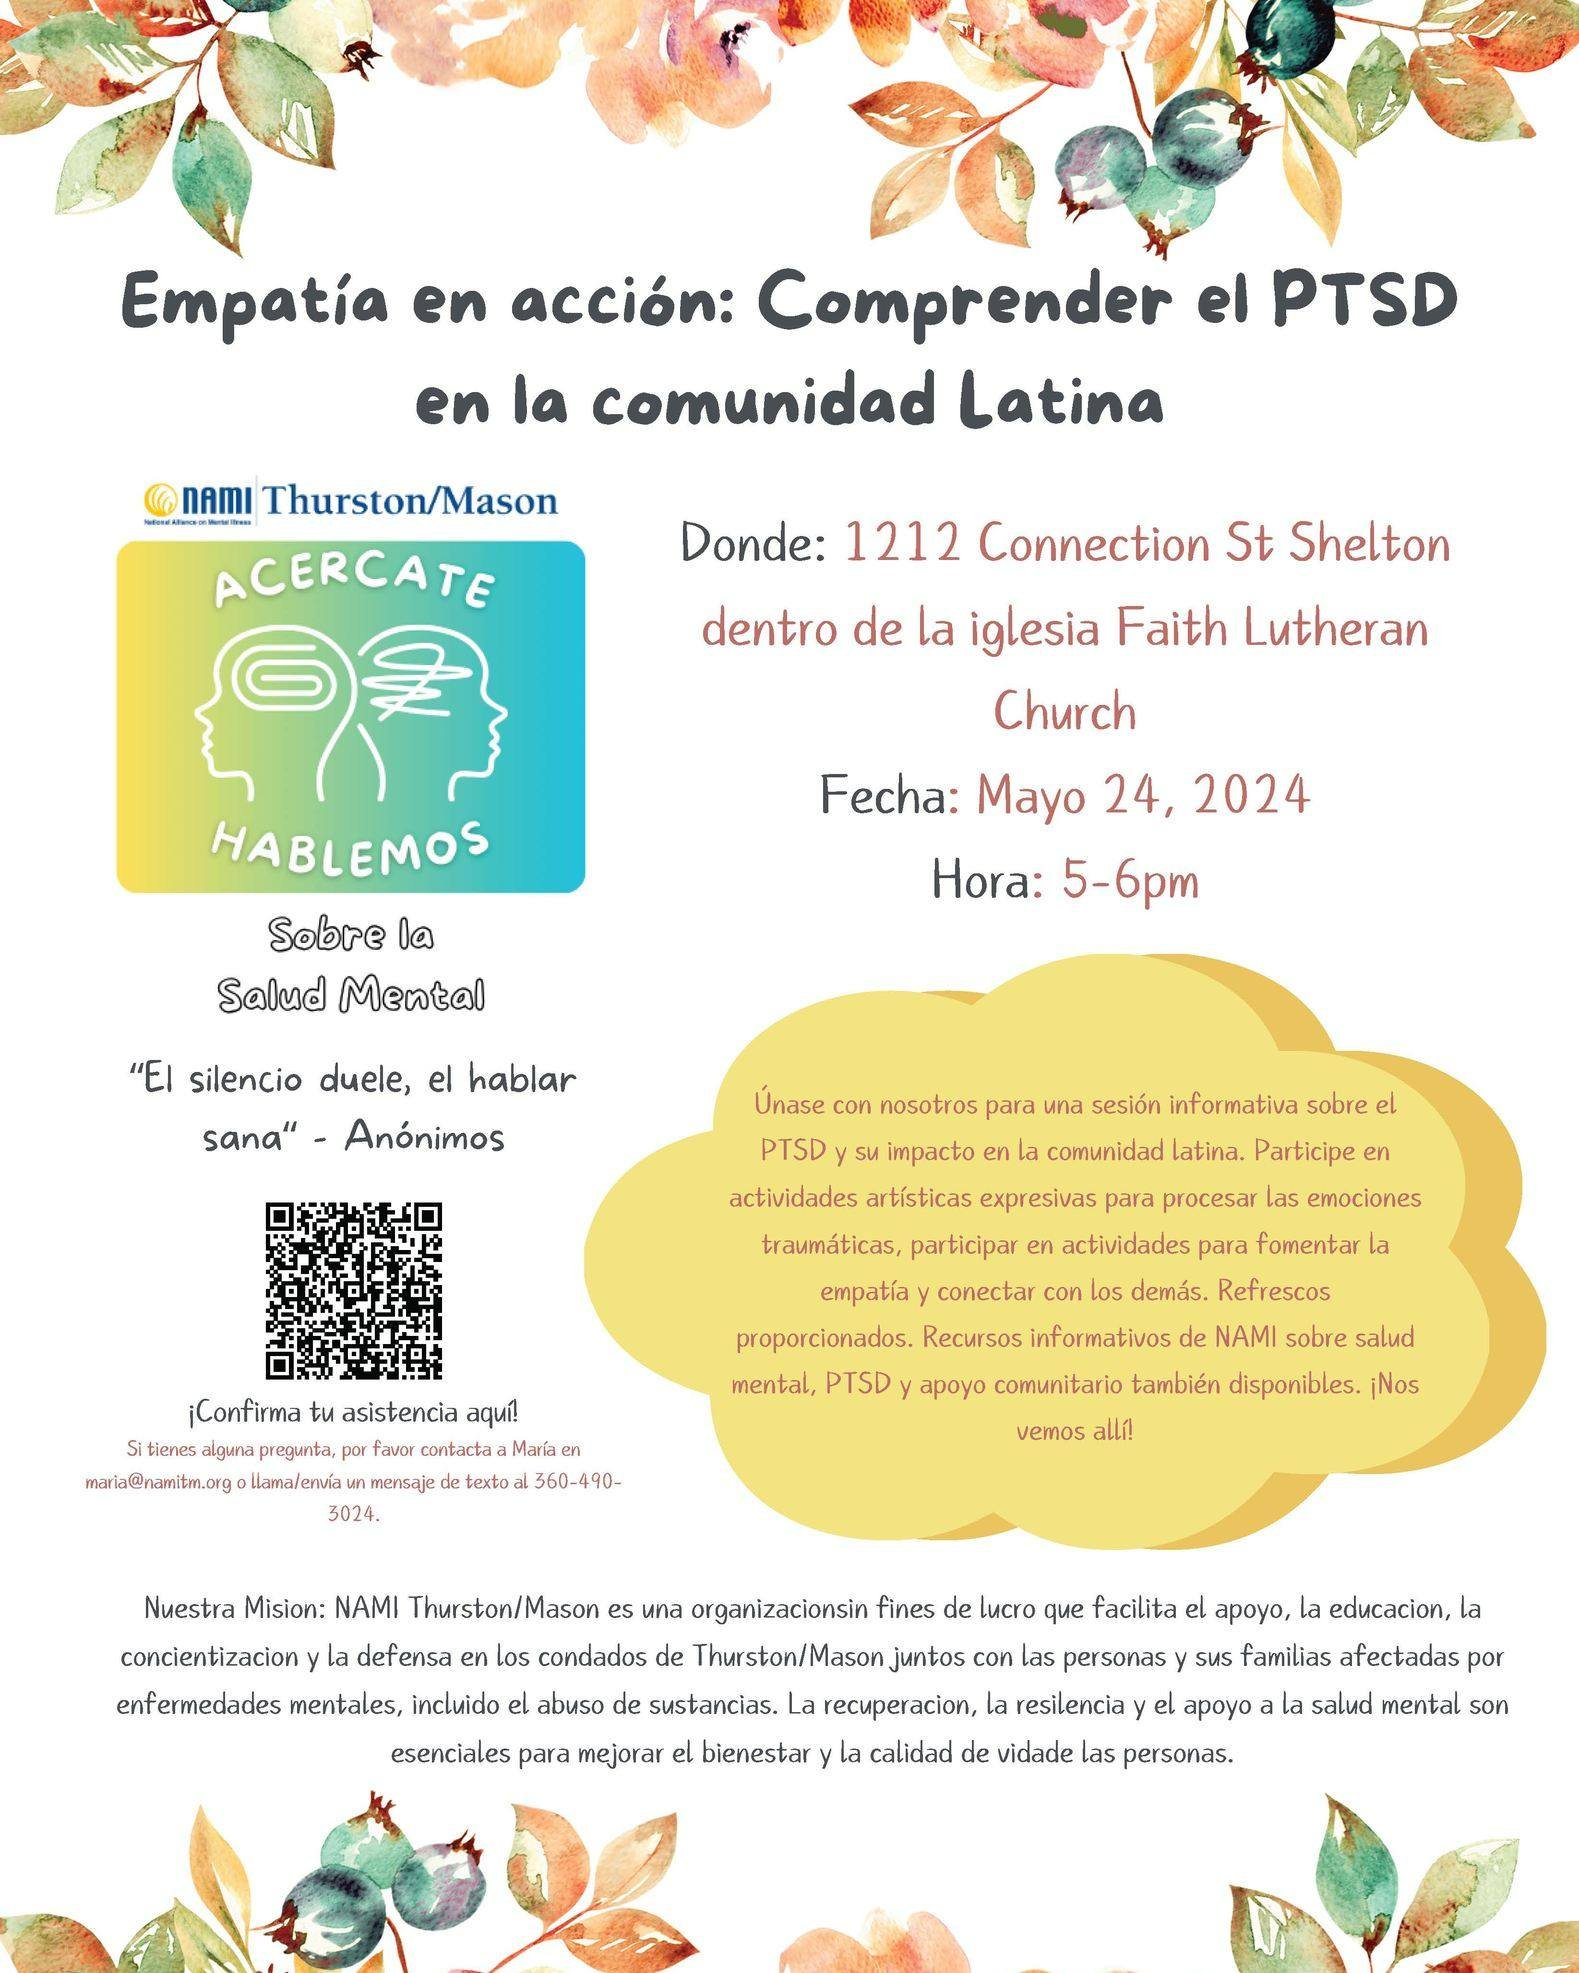 &Uacute;nase con NAMI Thurston/Mason para una sesi&oacute;n informativa sobre el PTSD y su impacto en la comunidad latina. Recursos informativos de NAMI sobre saludmental, PTSD y apoyo comunitario tambi&eacute;n disponibles. &iexcl;Nosvemos all&iacut